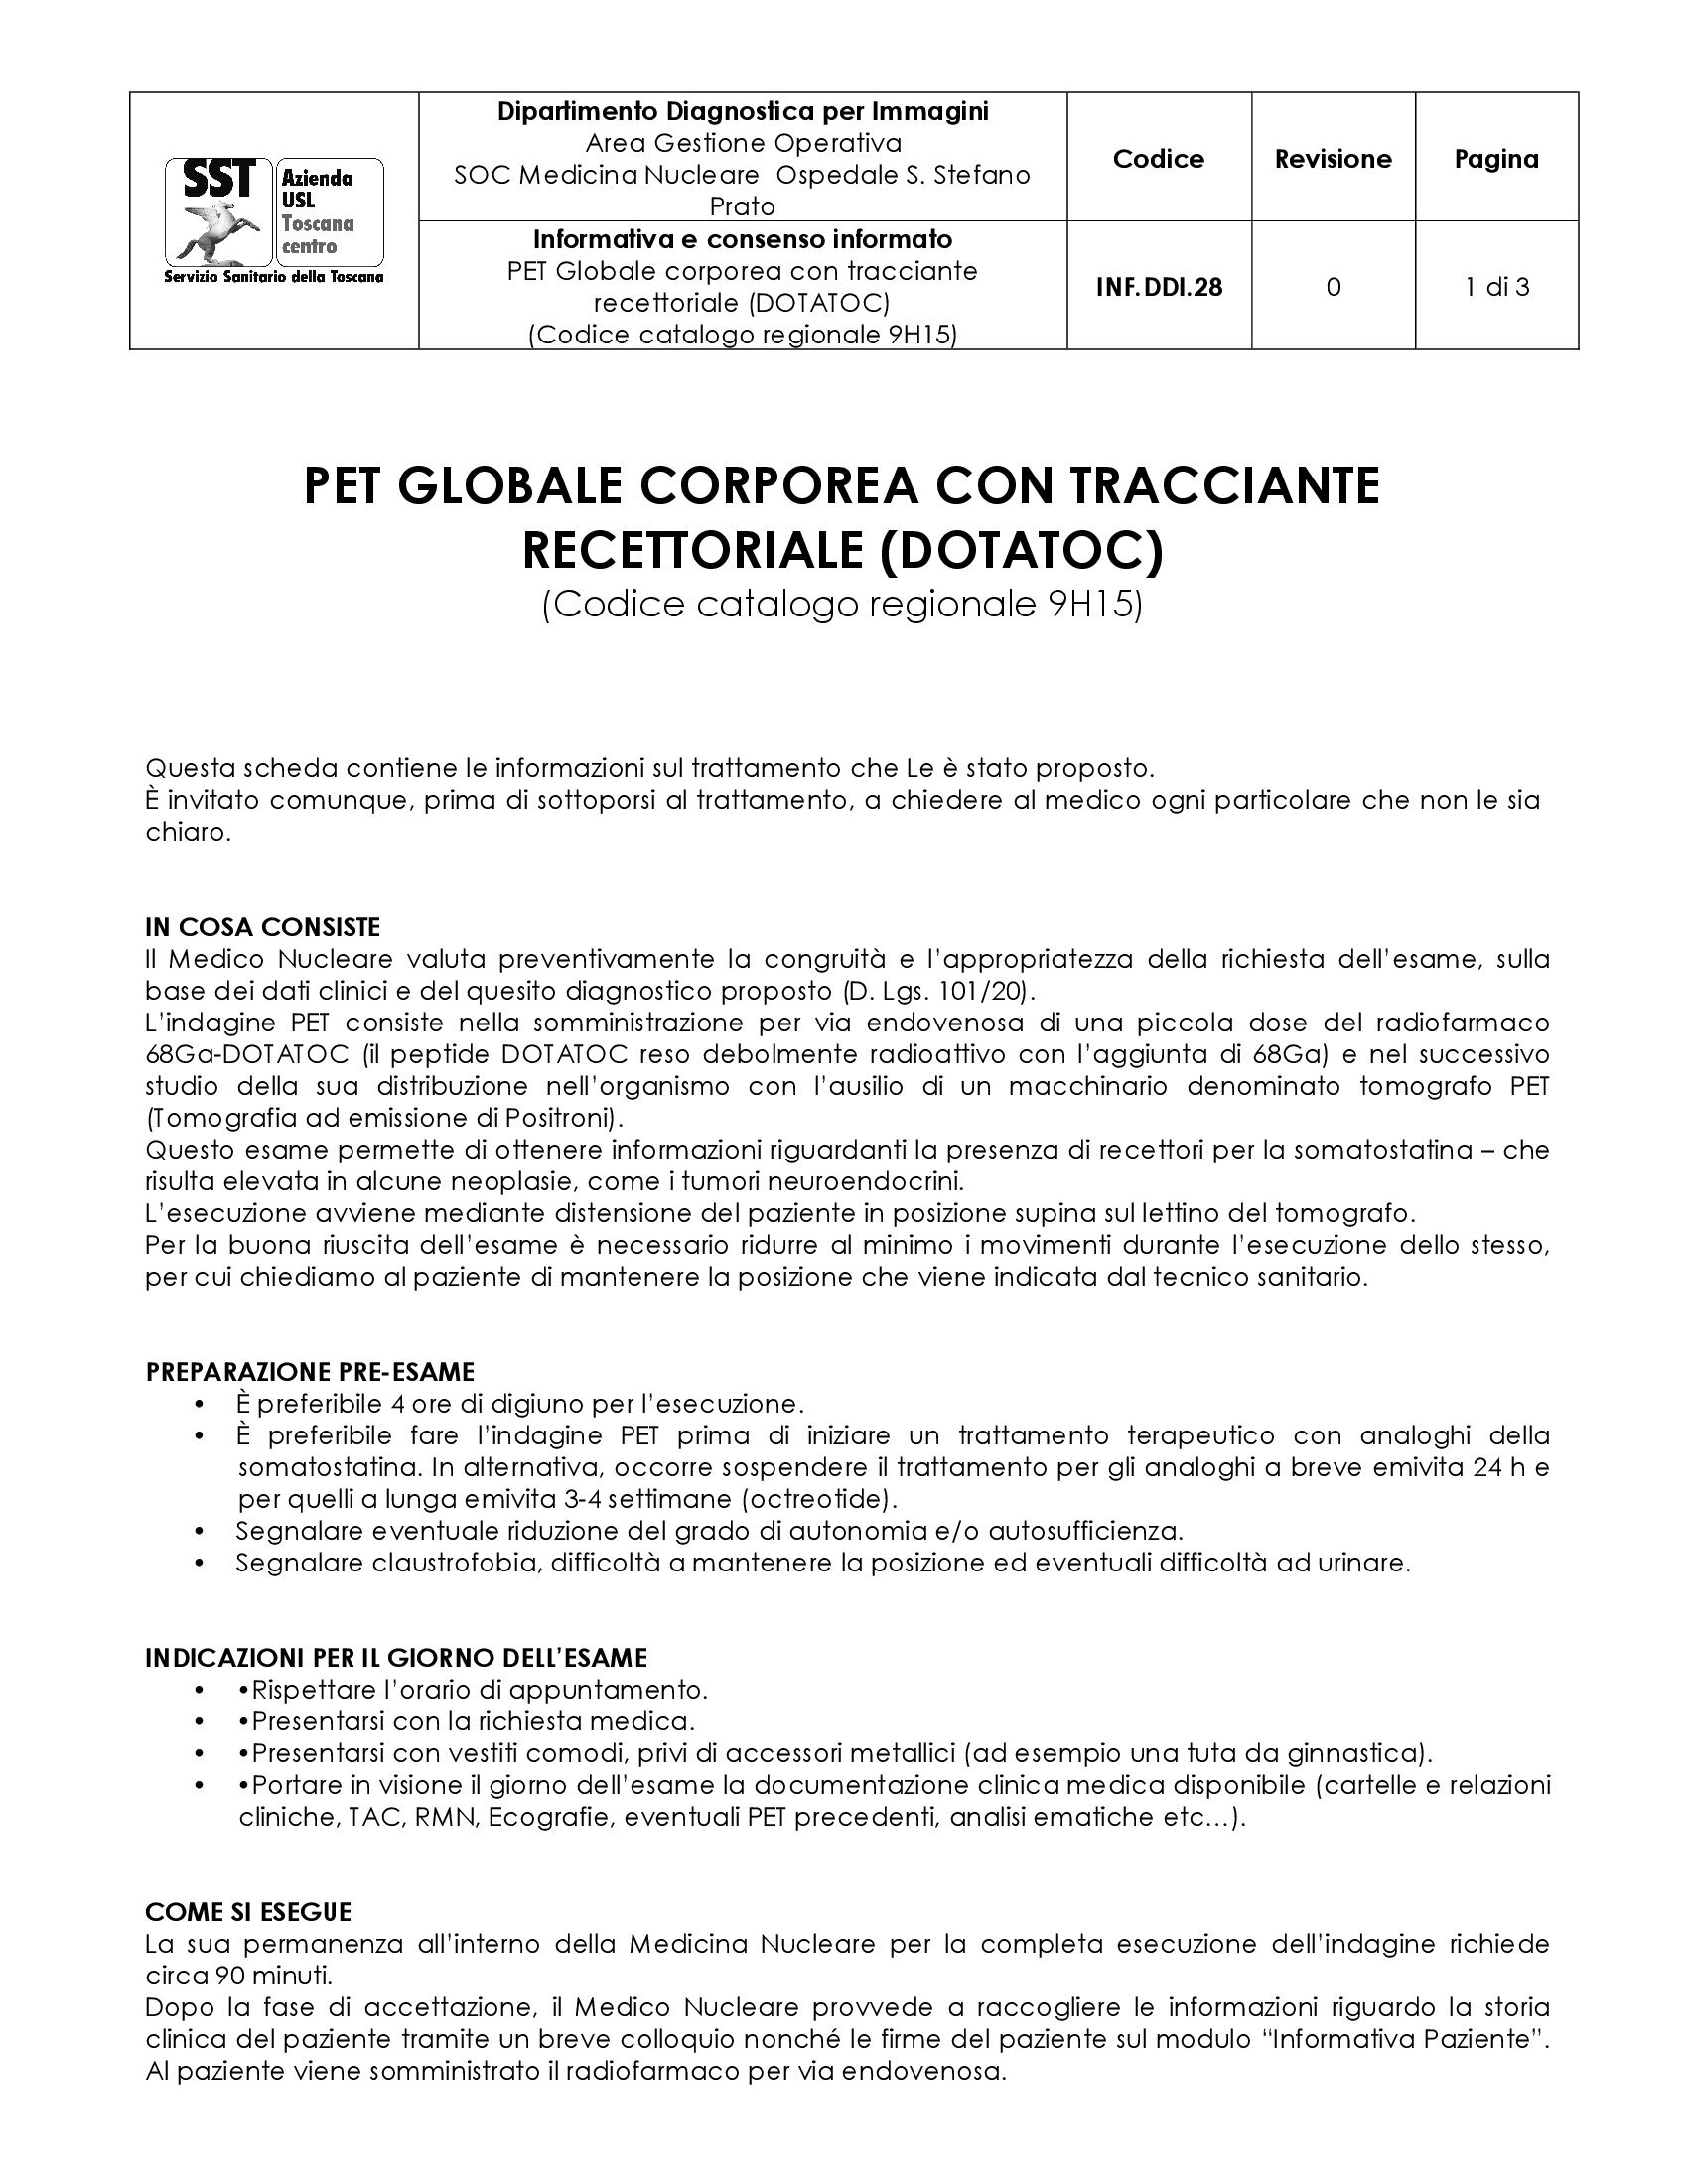 INF.DDI.28 PET Globale corporea con tracciante recettoriale (DOTATOC) (Codice catalogo regionale 9H15)